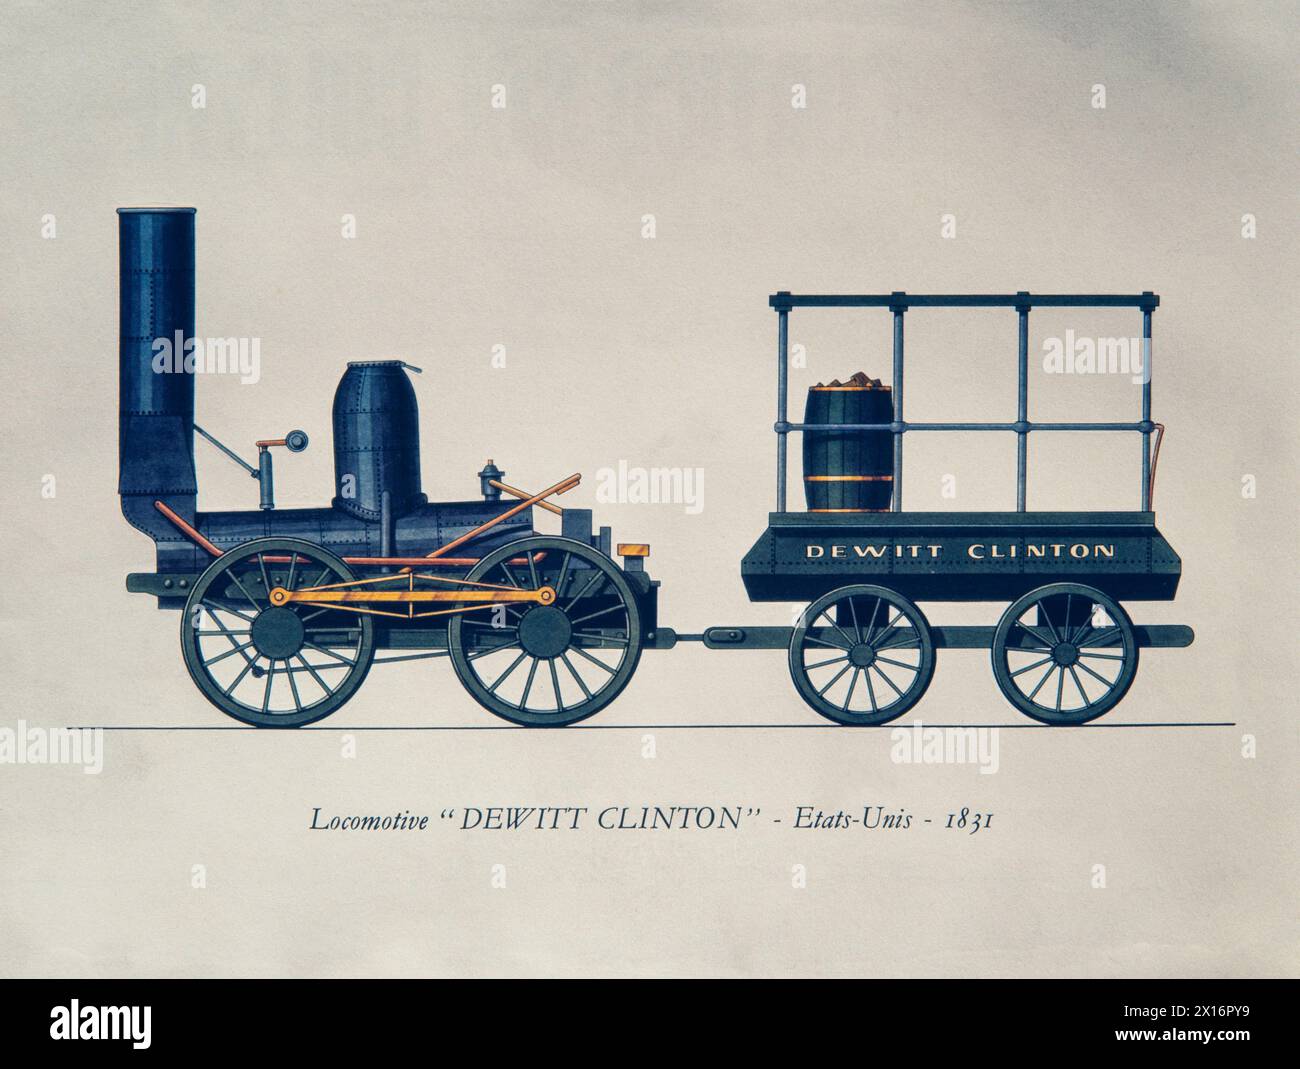 Zeichnung einer Lokomotive „Dewitt Clinton“ - 1831 - Vereinigte Staaten - Farbstich Stockfoto